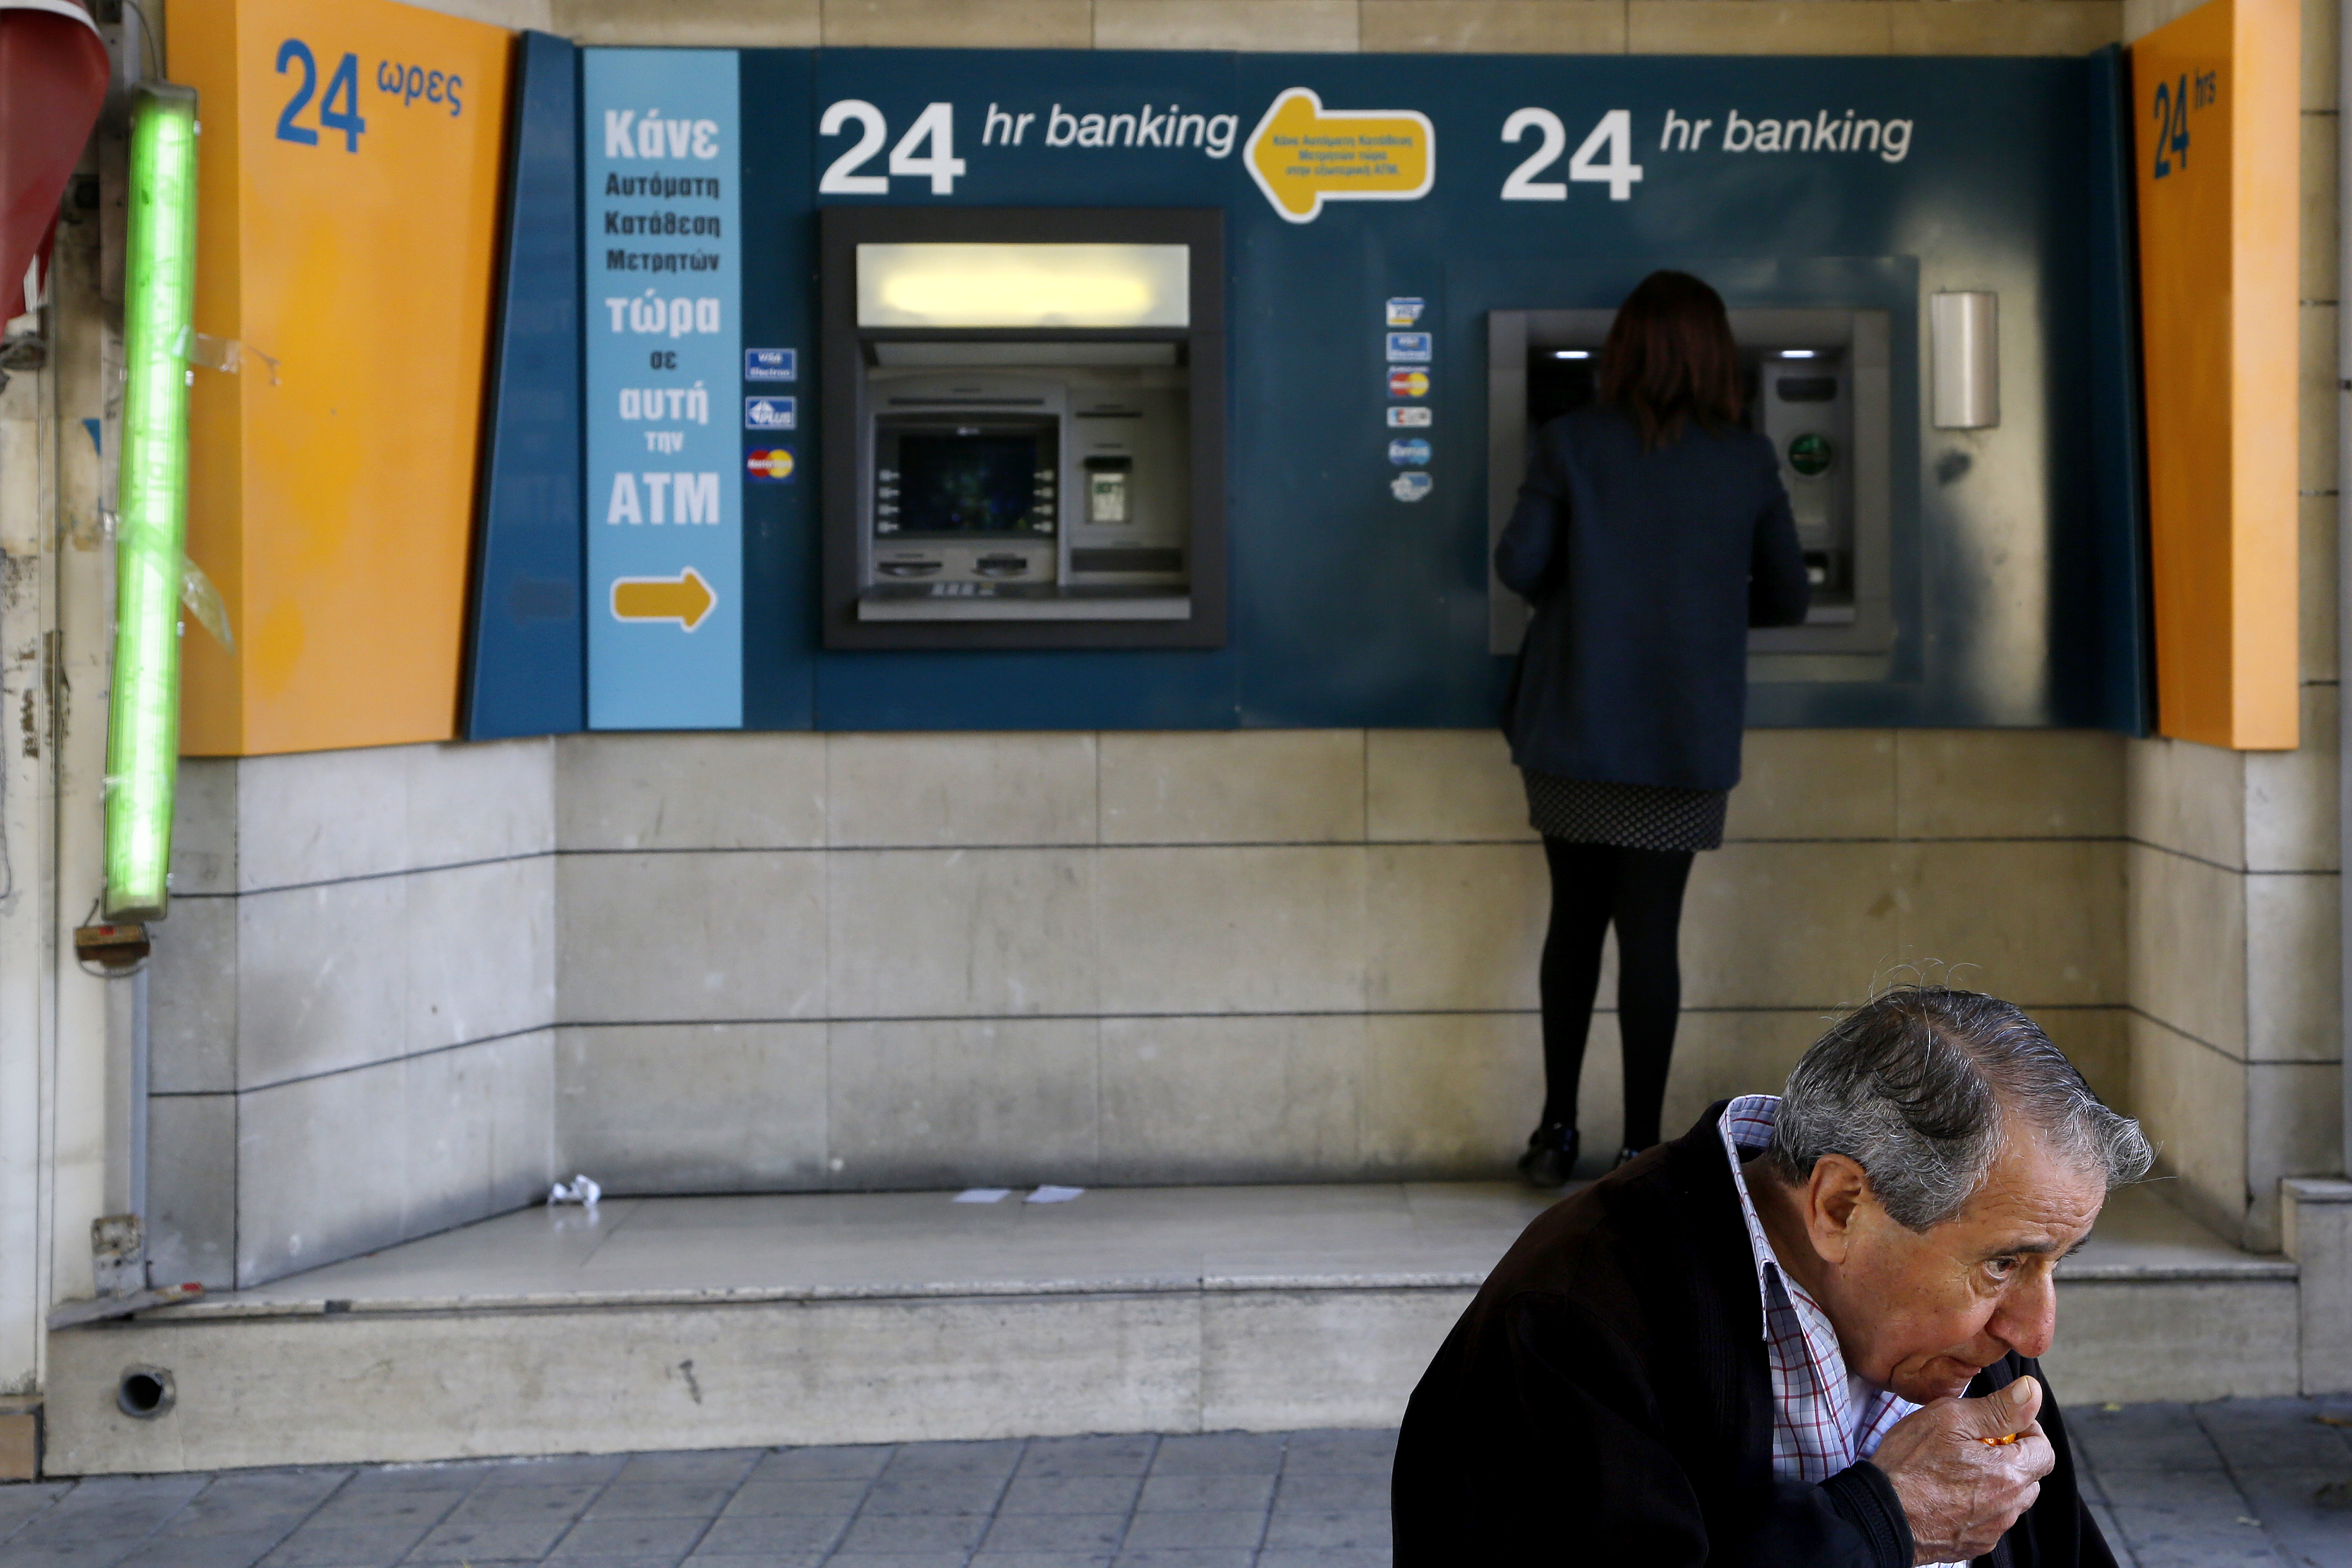 Κύπρος: Σε υψηλά επίπεδα το ιδιωτικό χρέος, σύμφωνα με την Κεντρική Τράπεζα